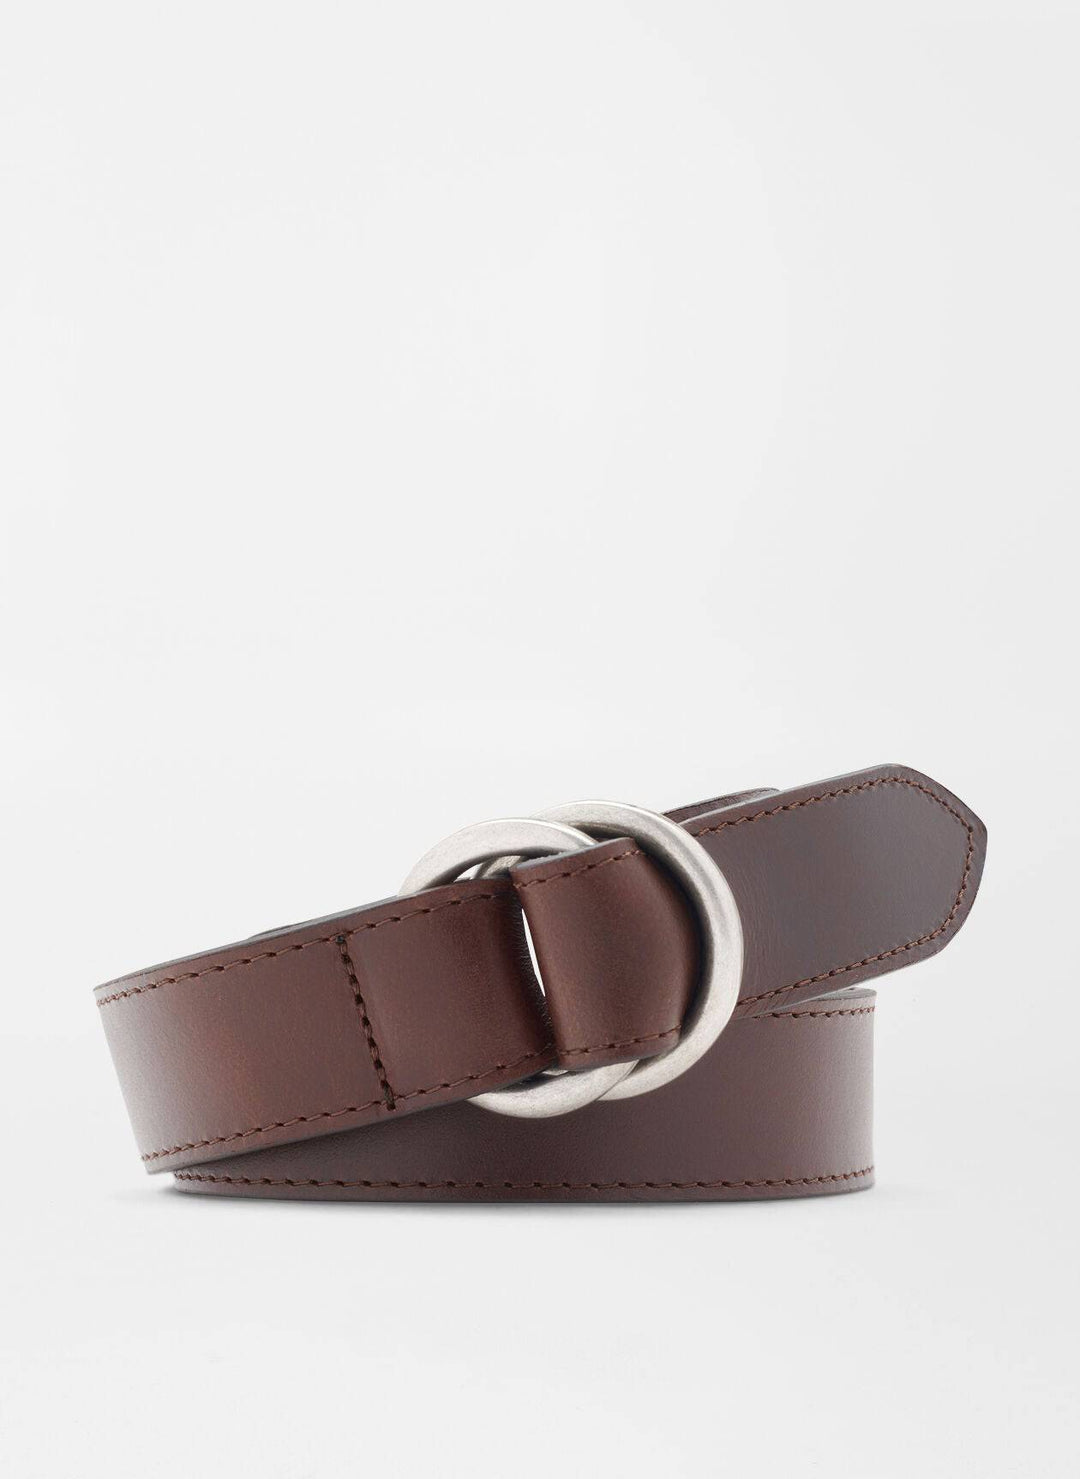 Peter Millar Vintage leather O-Ring Belt